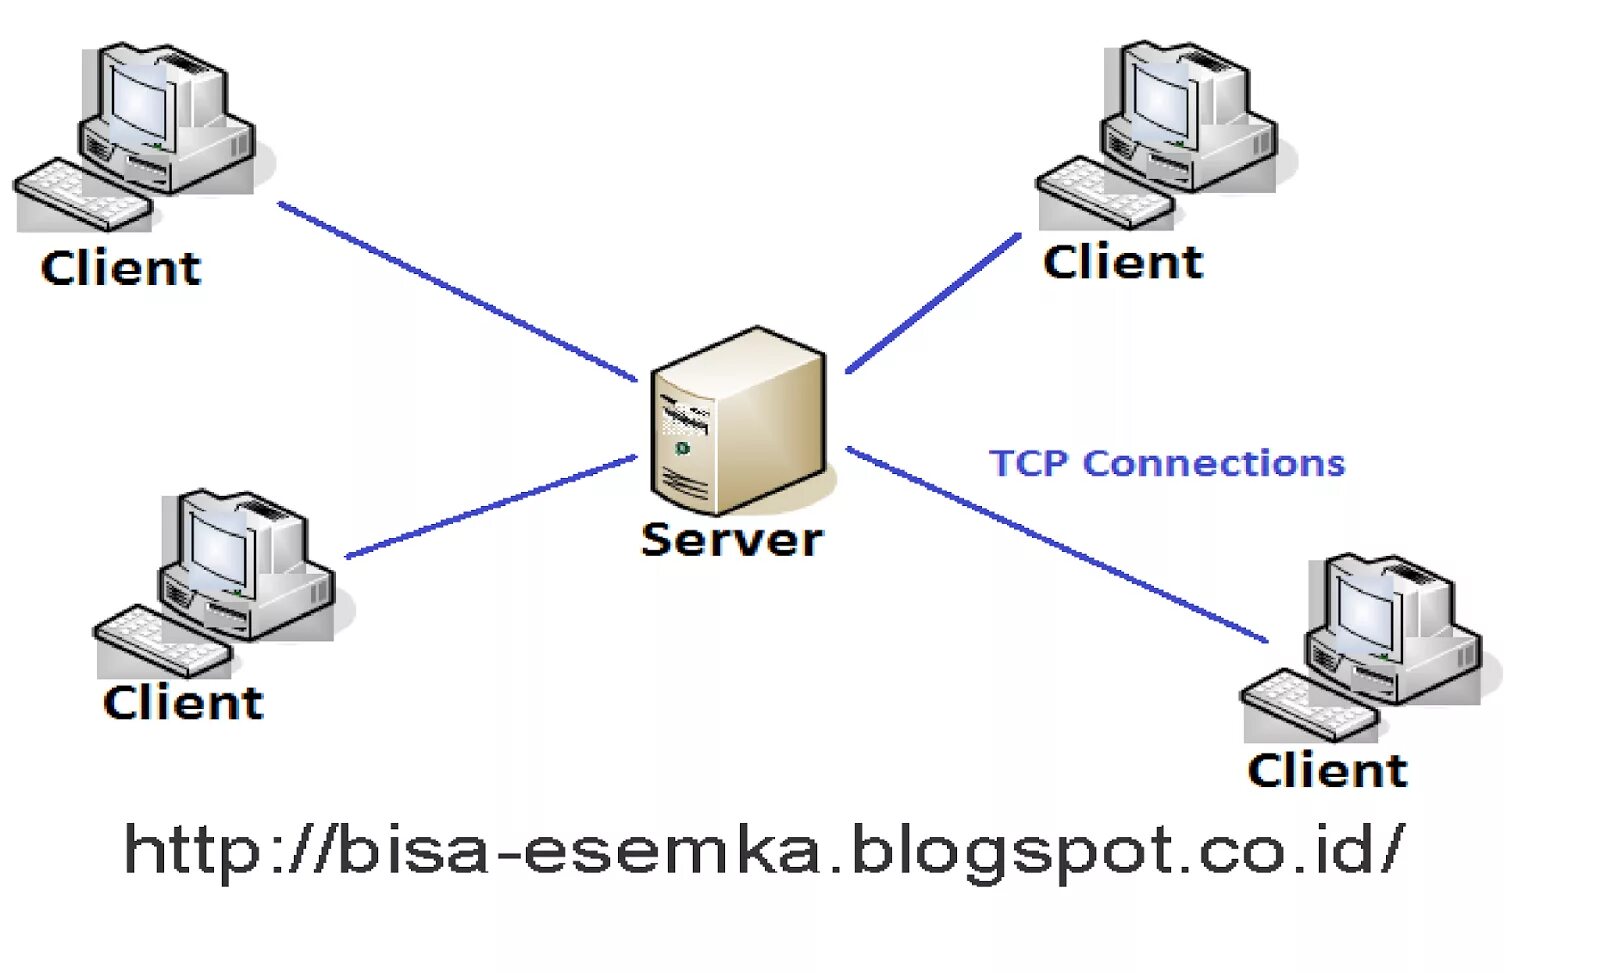 Модели архитектуры клиент-сервер. TCP архитектура клиент сервер. Схема клиент-серверной архитектуры. Технология клиент-сервер.